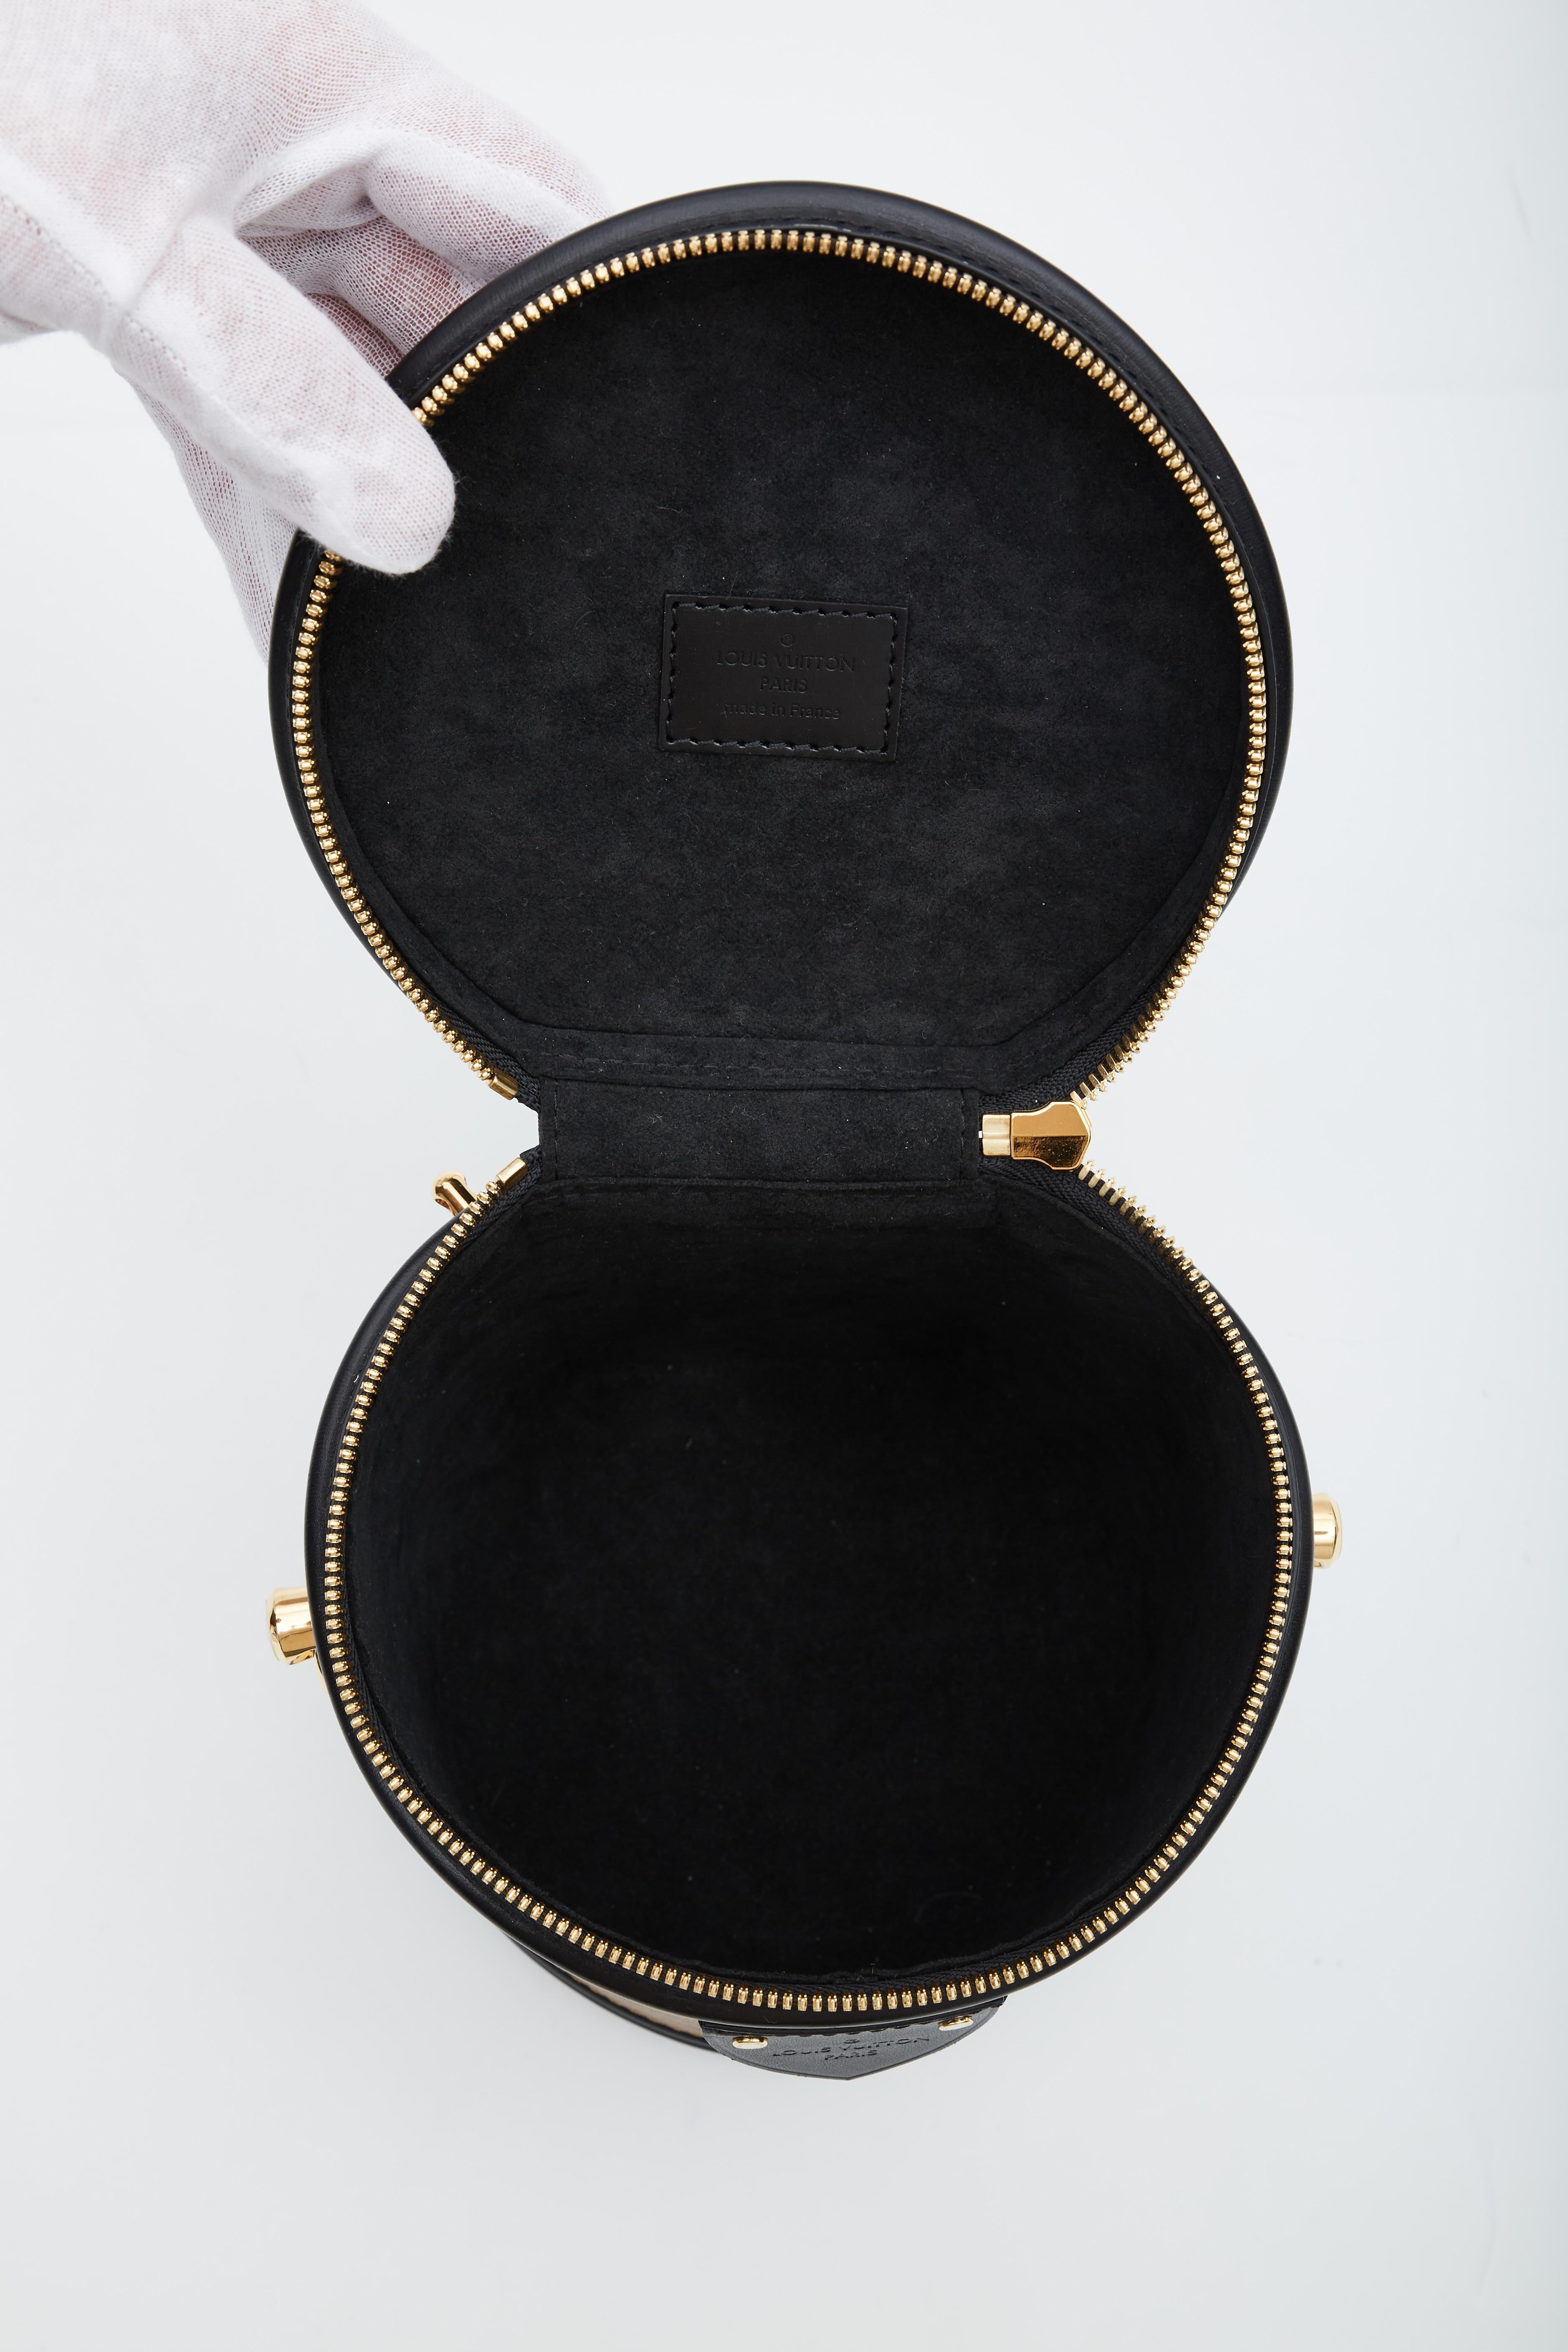 Louis Vuitton Monogram Reverse Cannes Mm Bag (2020) For Sale 2